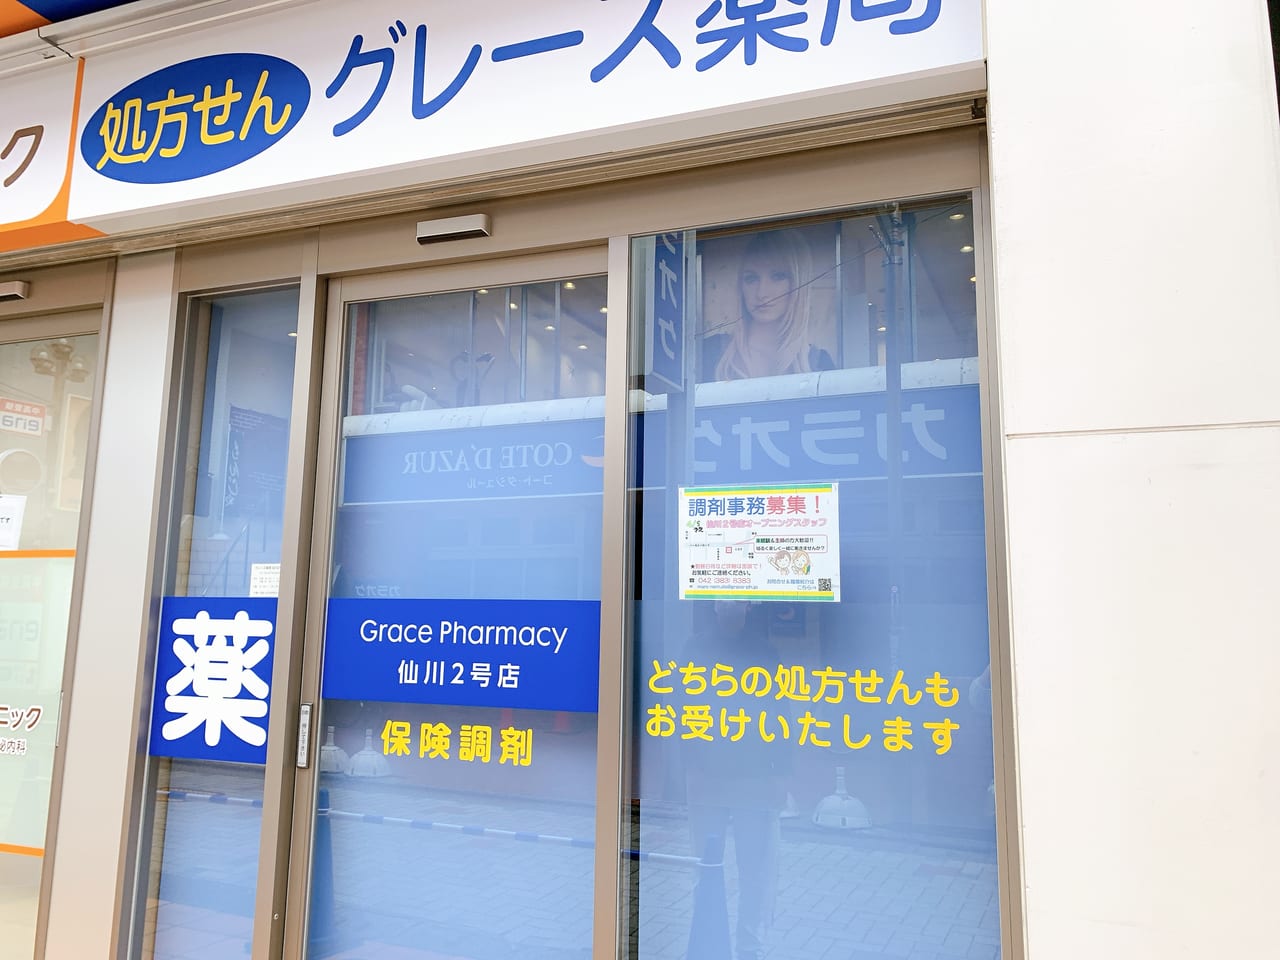 グレース薬局が仙川にオープンしました。